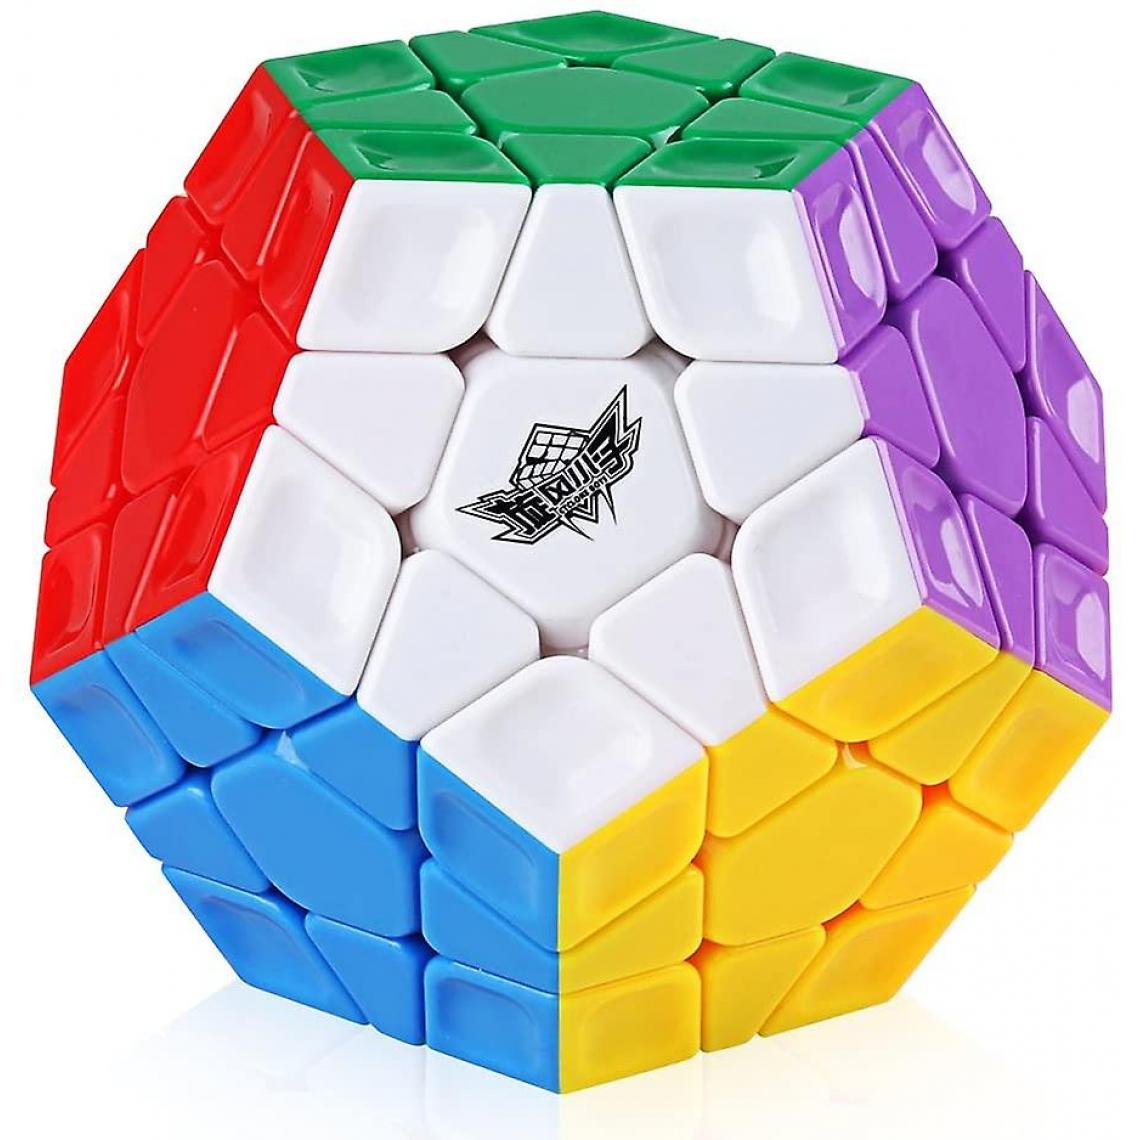 Universal - Cyclone Boy 3x3 sans oreille vitesse cube pentagonal 12 lingots puzzle bidimensionnel.(Coloré) - Animaux